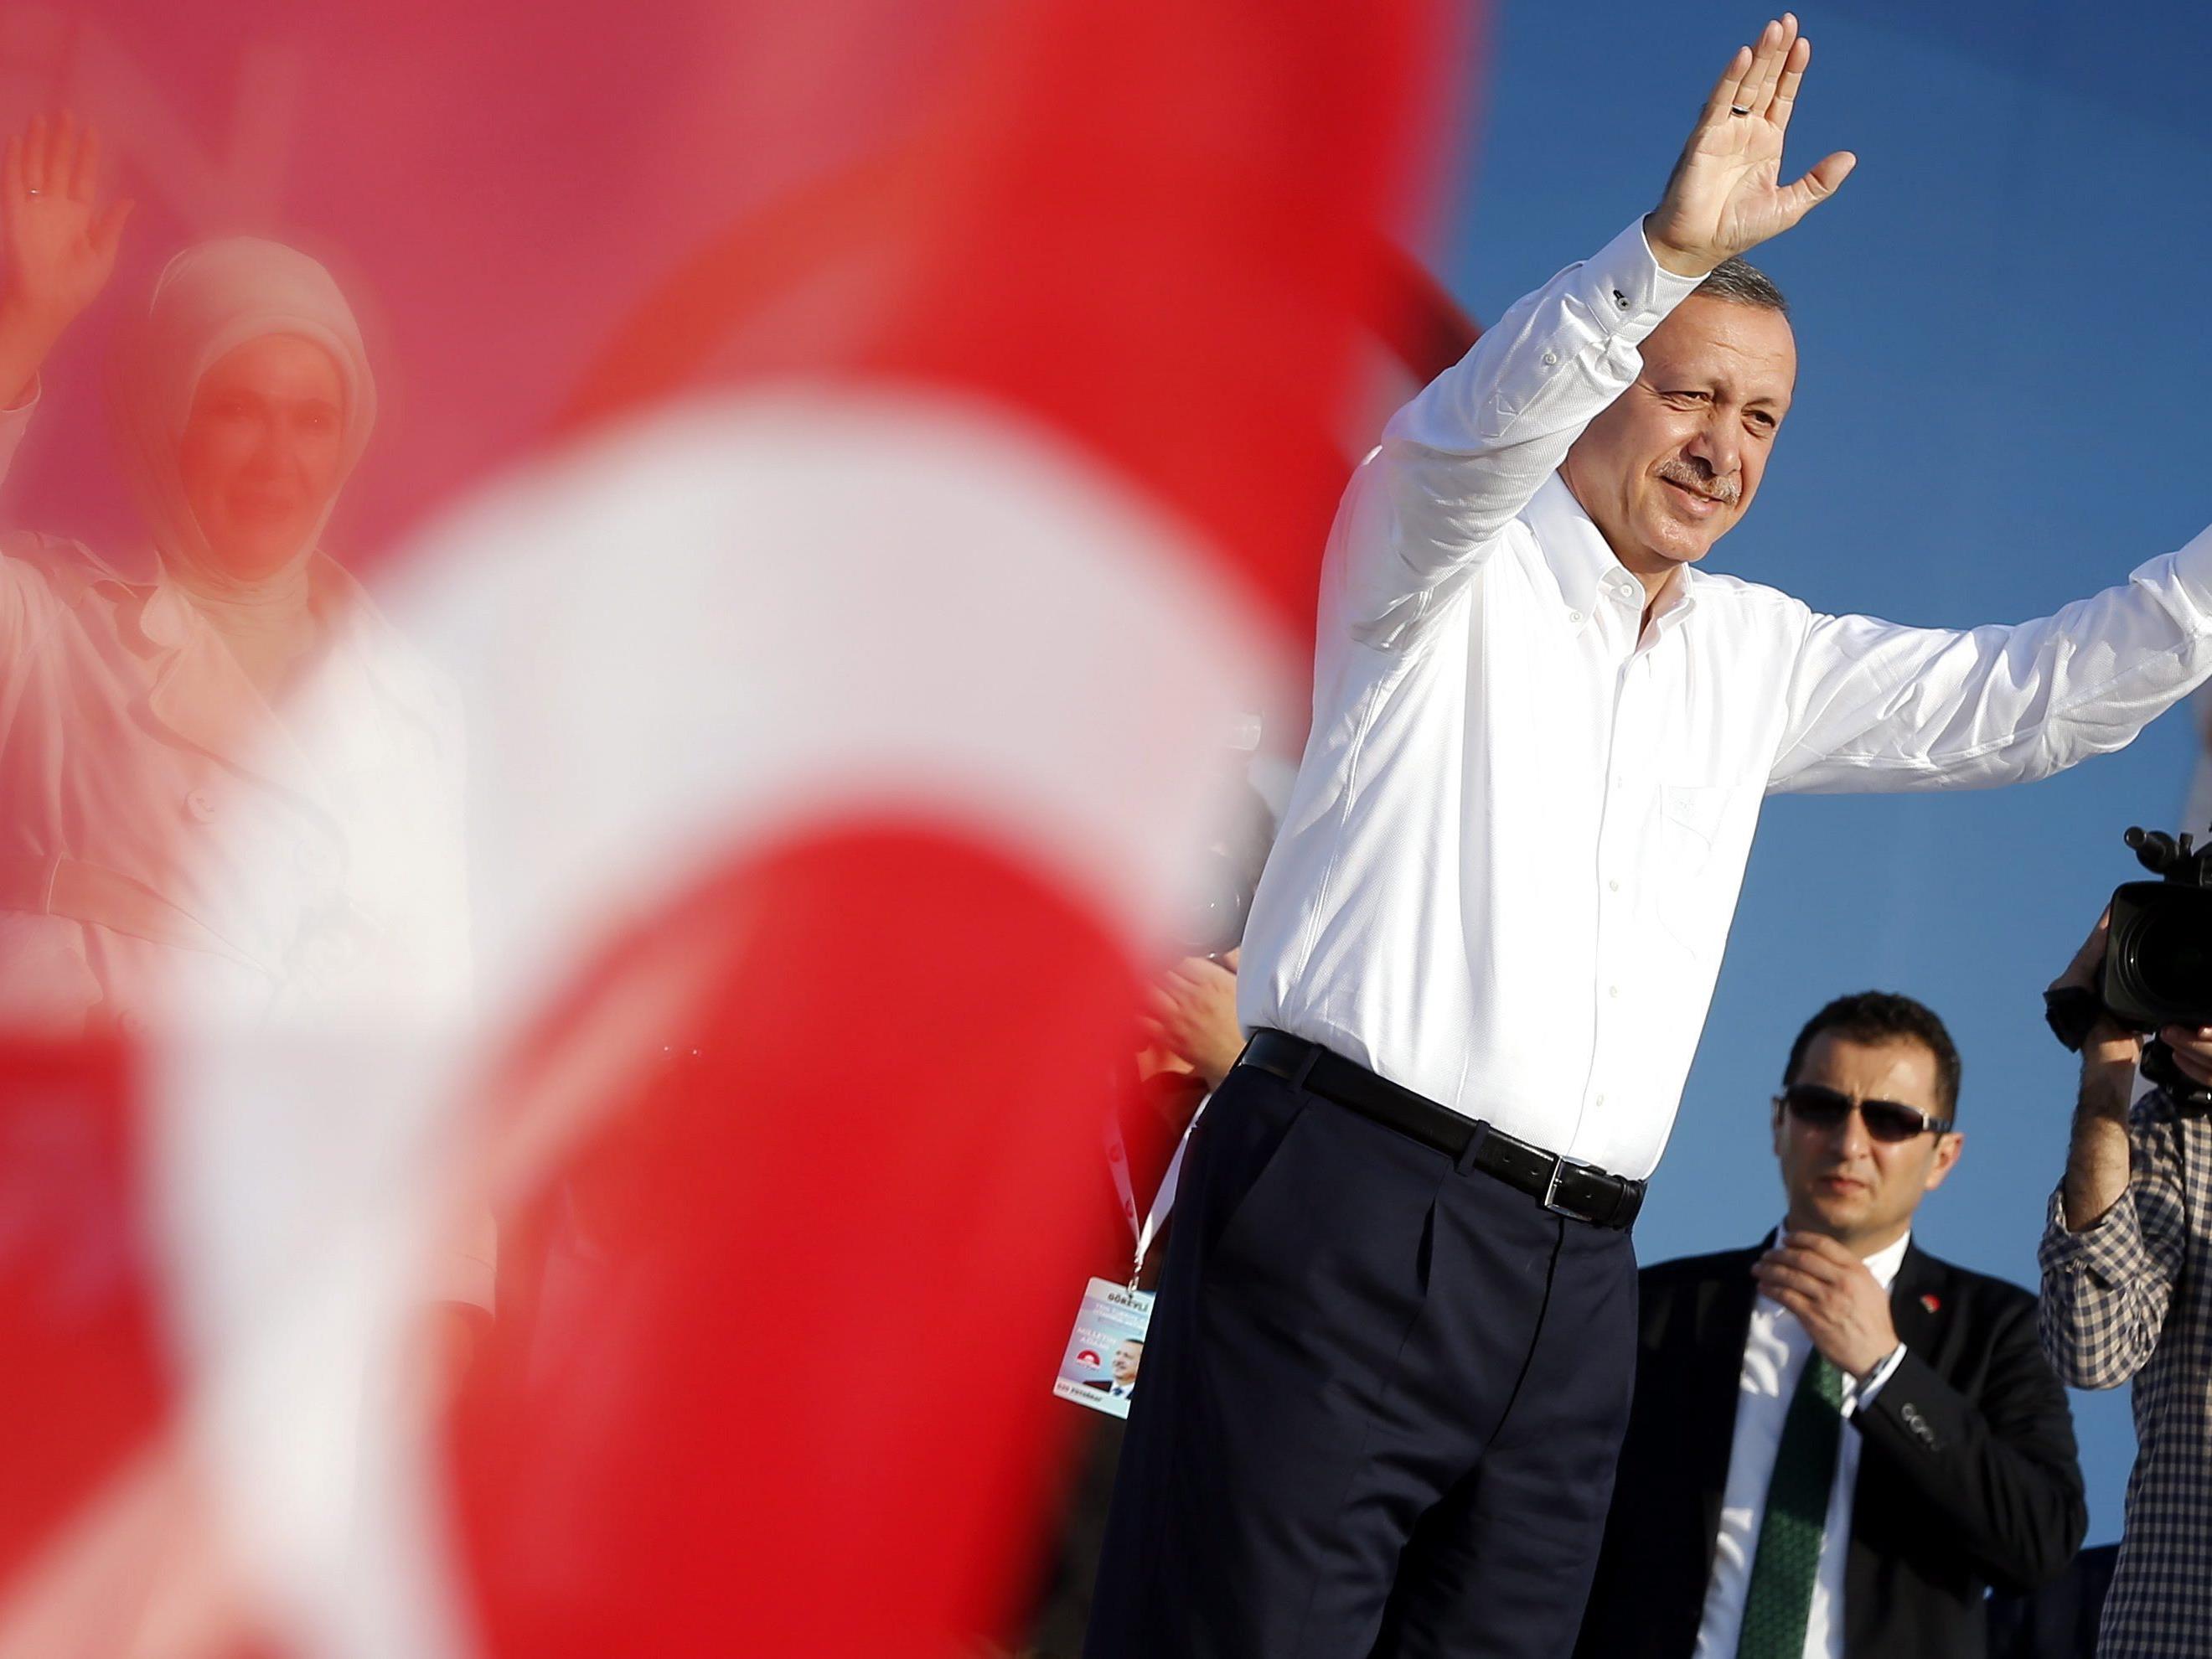 ürkischer Premier strebt Präsidentenamt an